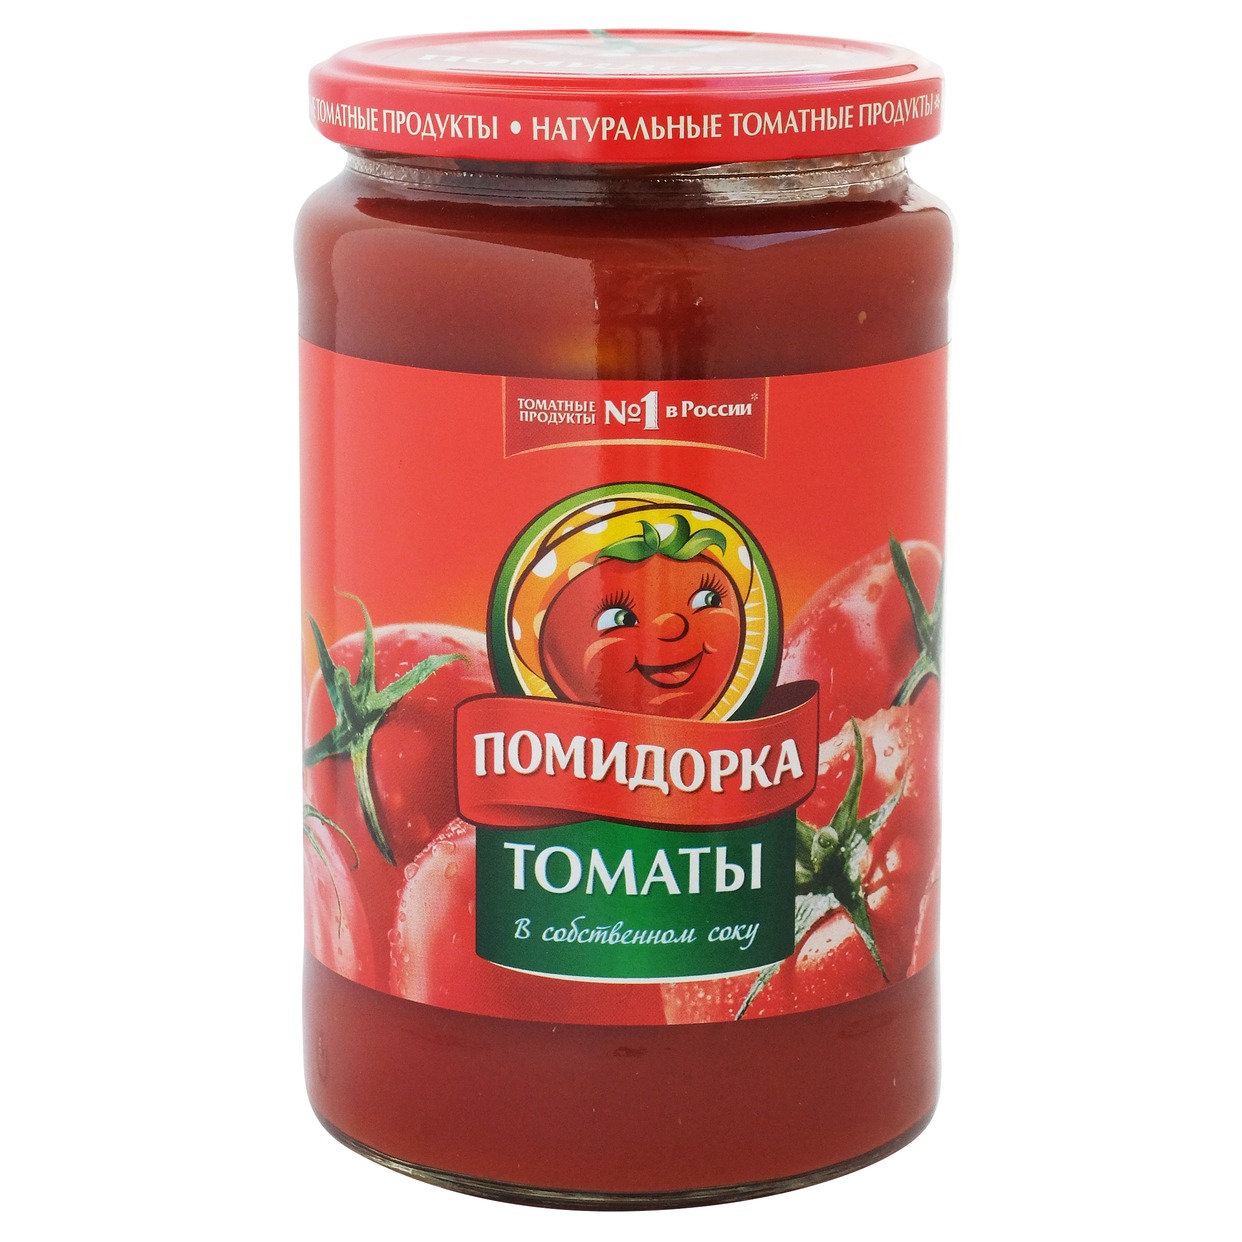 ПОМИД.Томаты неочищ.в томат.соке 720мл